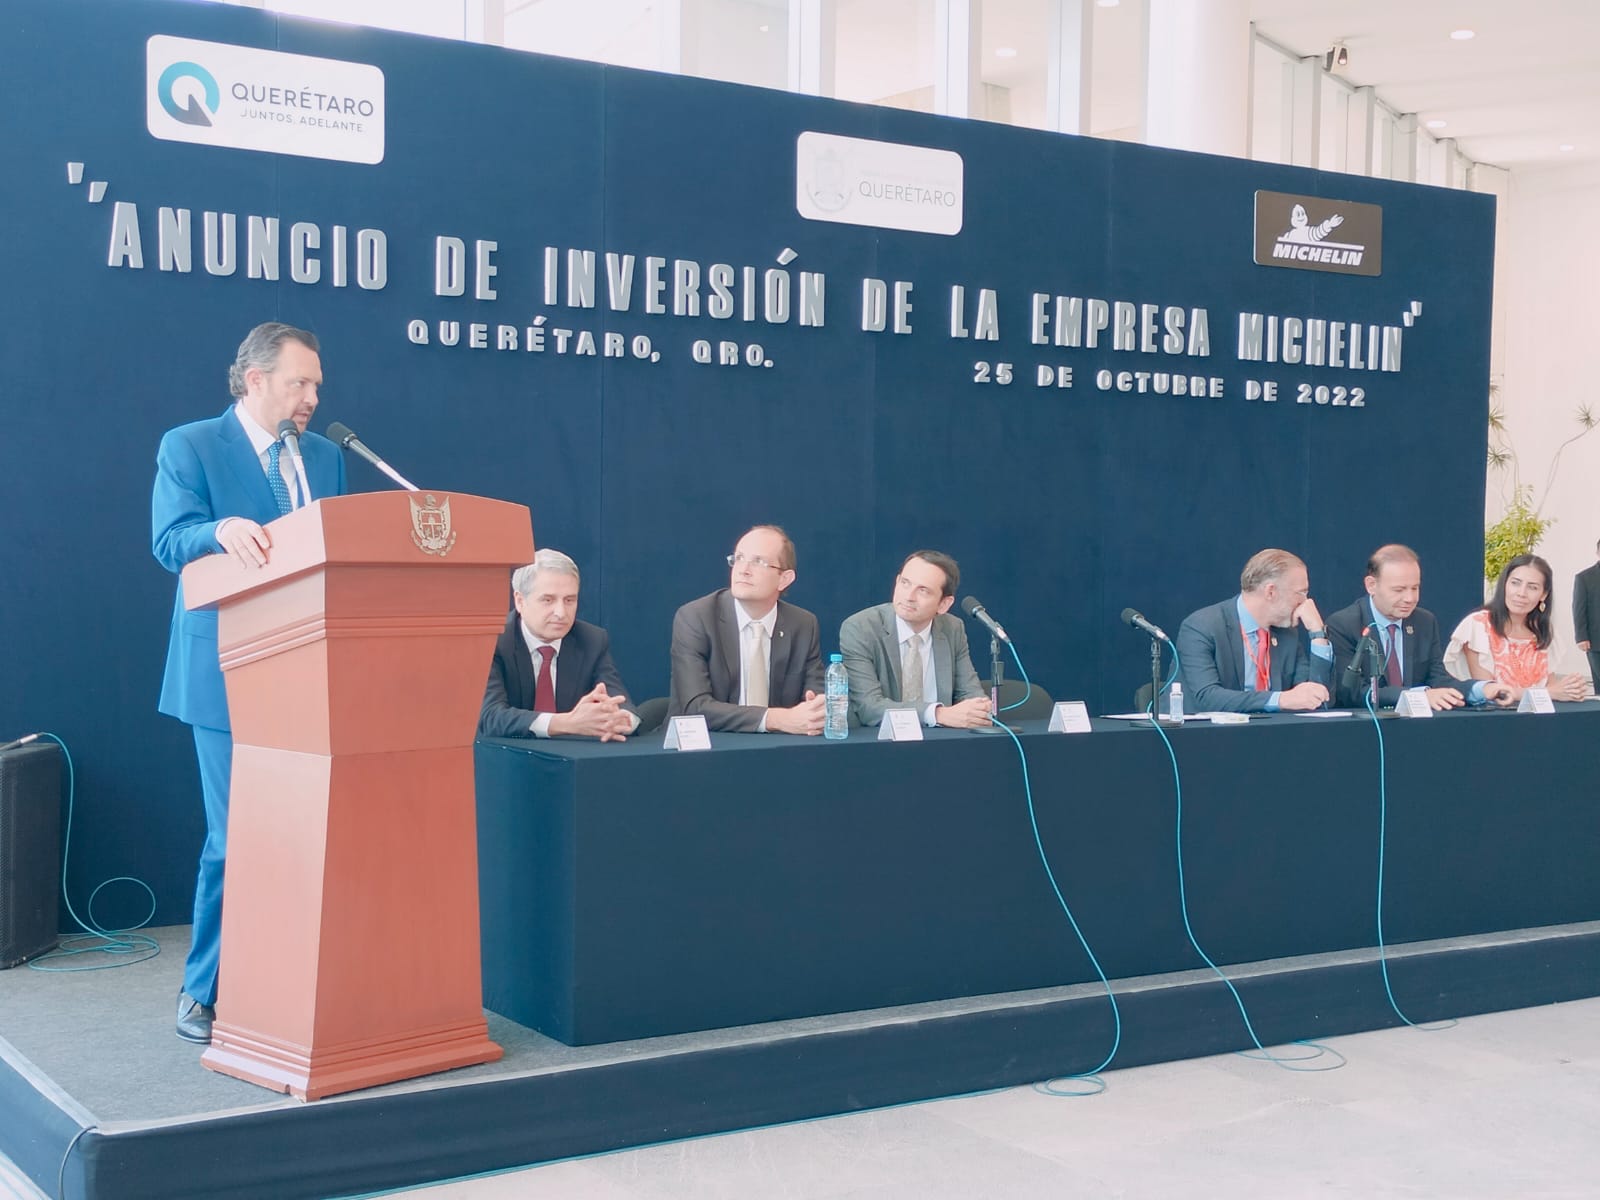 La firma francesa pondrá en marcha una planta de reciclado de llantas para generar 211 nuevos empleos para el estado de Querétaro. Foto: Marittza Navarro